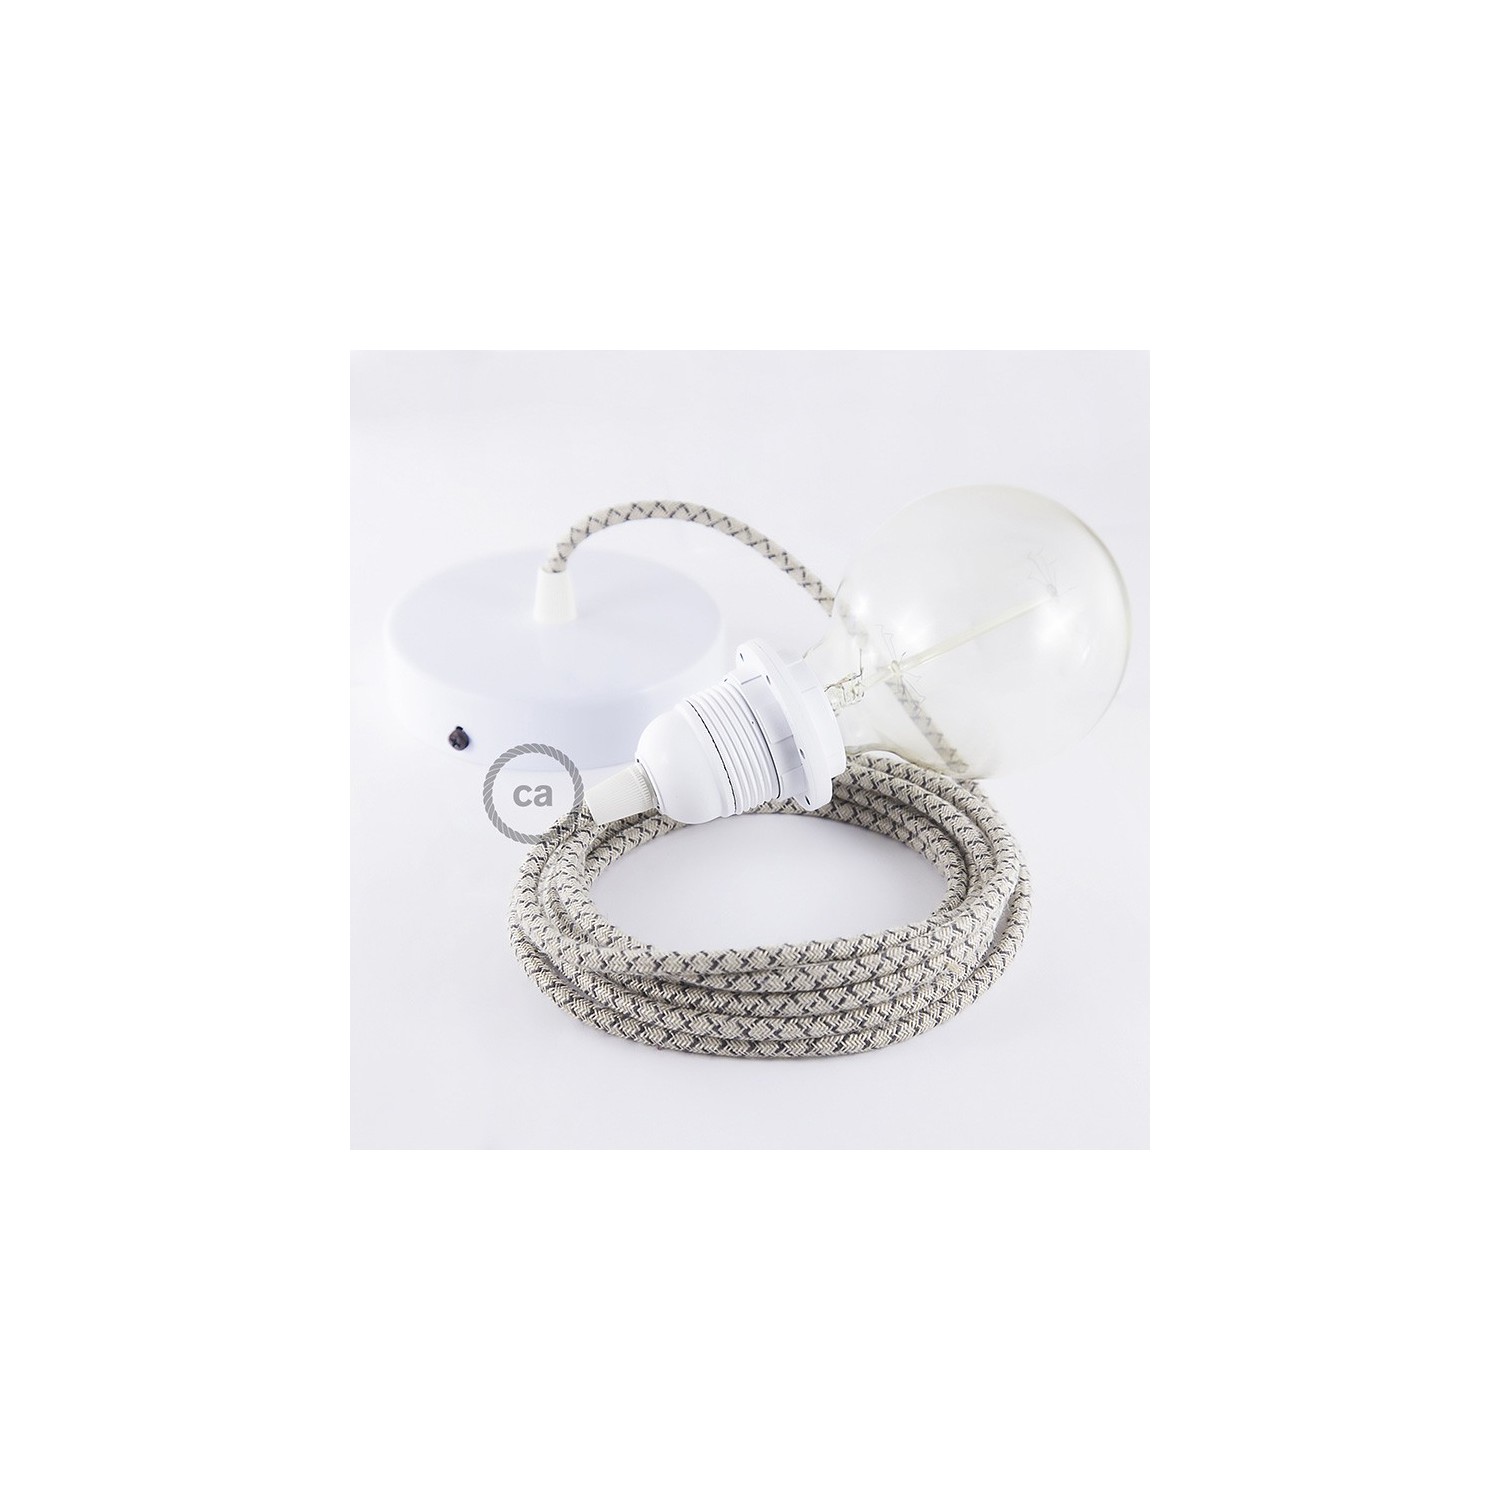 Pendel para pantalla, lámpara colgante cable textil Rombo Antracita RD64